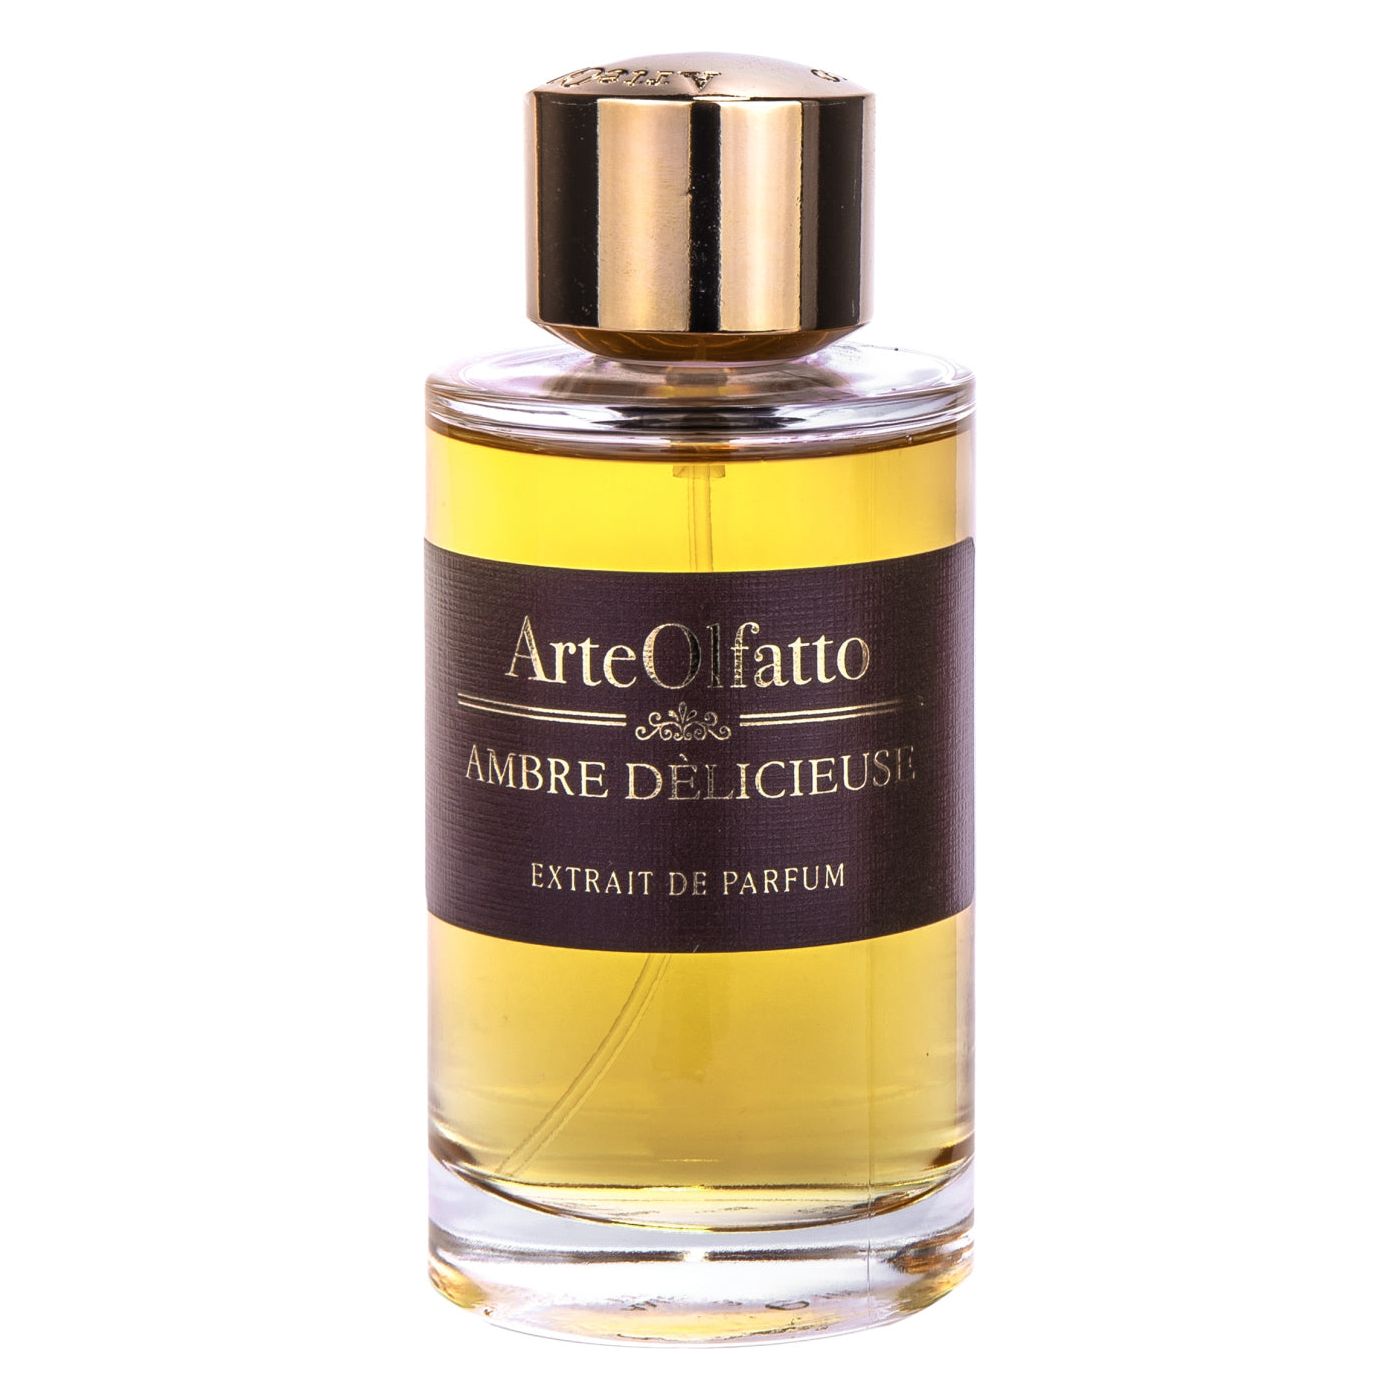 ArteOlfatto - Ambre Delicieuse - Extrait de Parfum